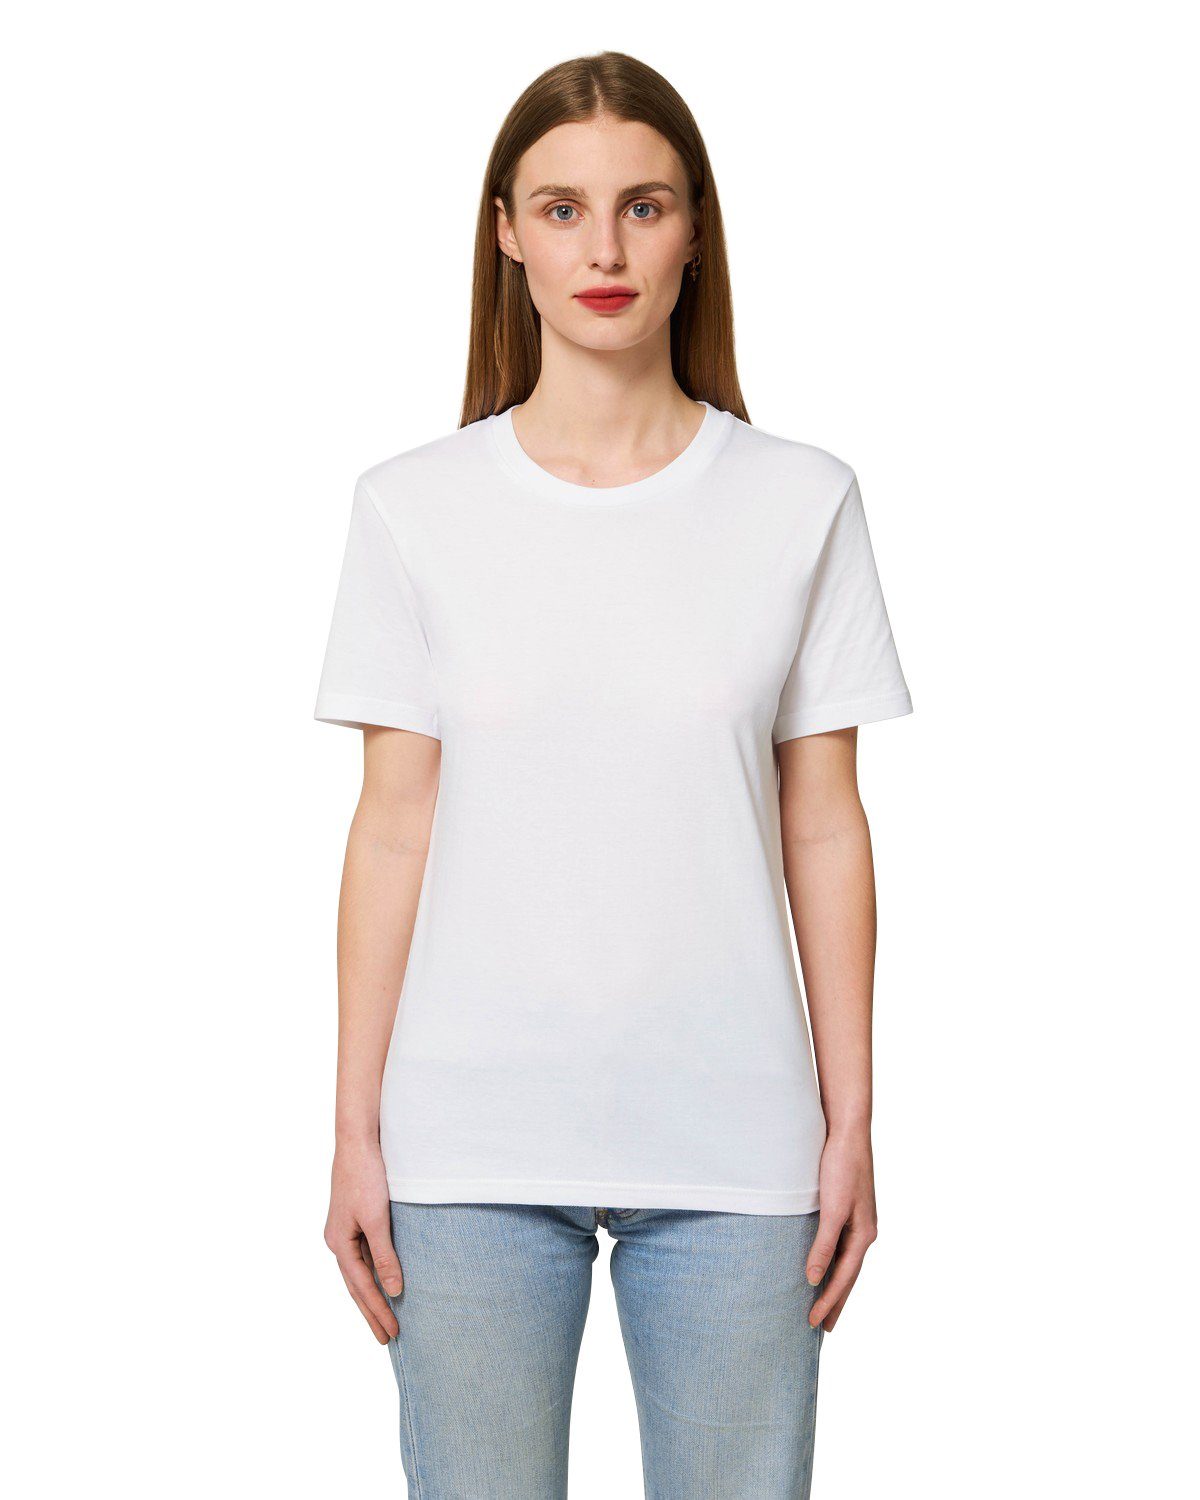 Hochwertiges 100% T-Shirt Bio-Baumwolle Unisex aus White T-Shirt Hilltop